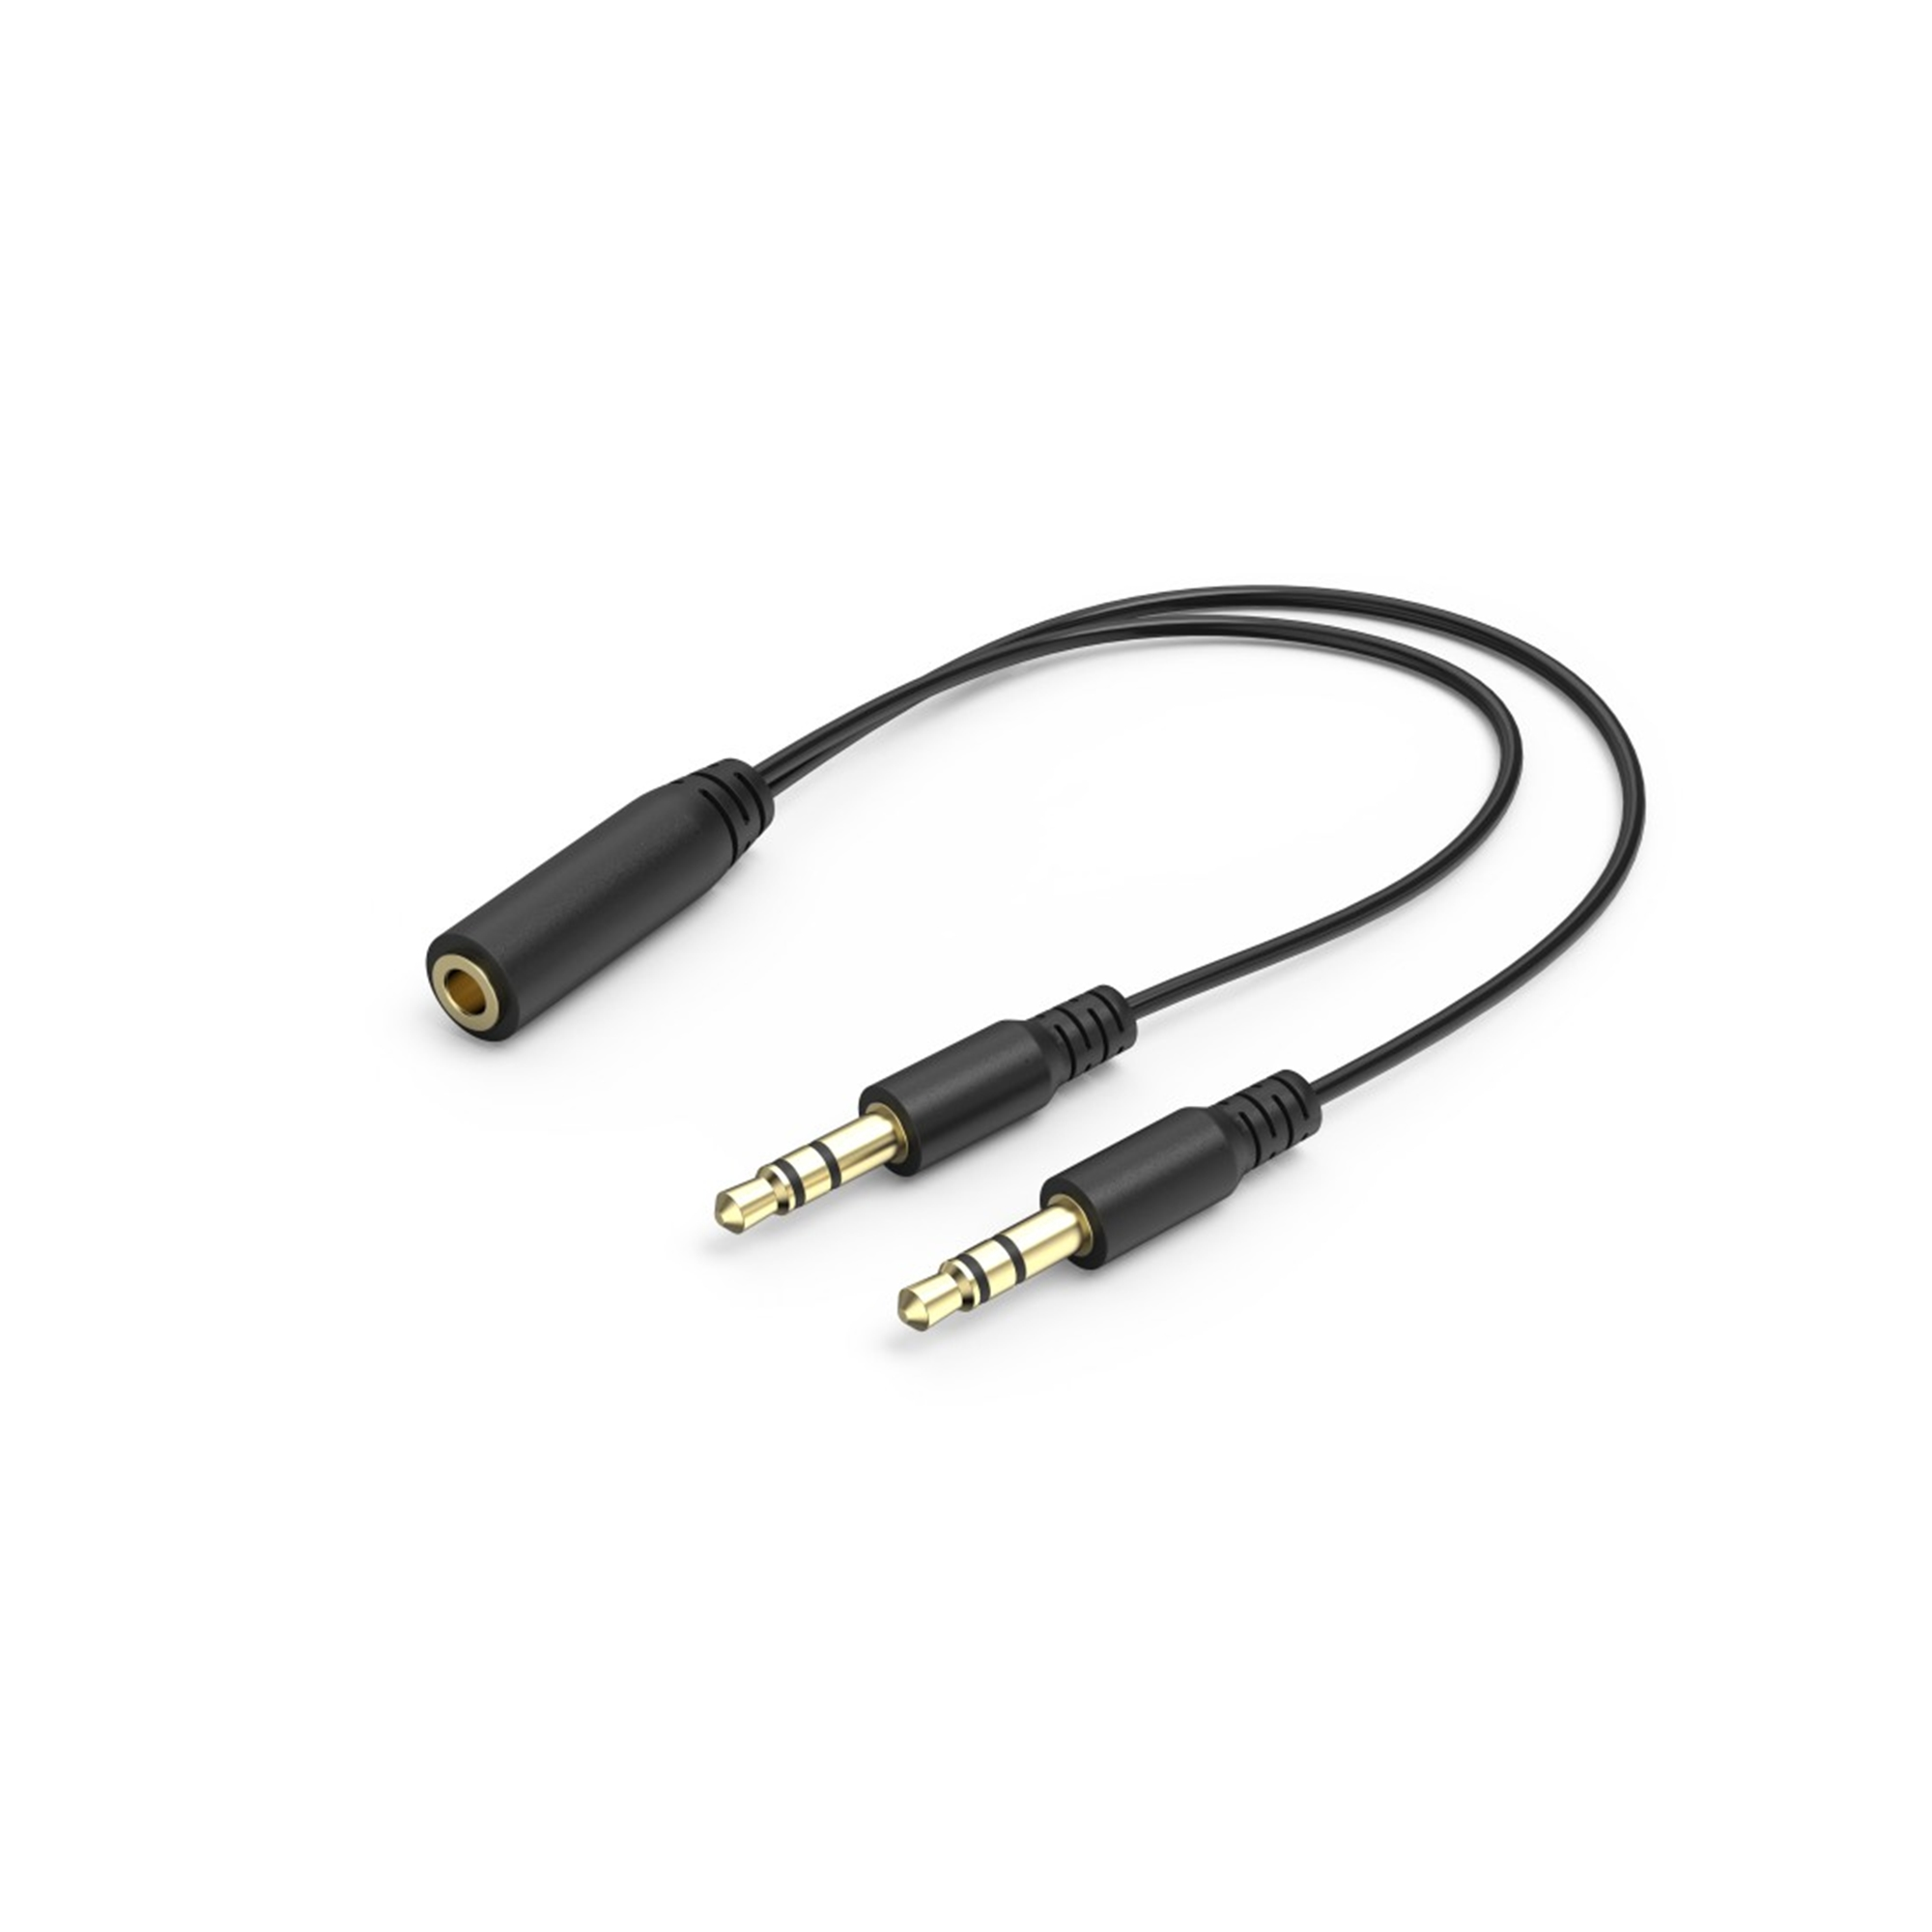 Weiß Over-ear Gaming-Headset V2, SoundZ 100 URAGE